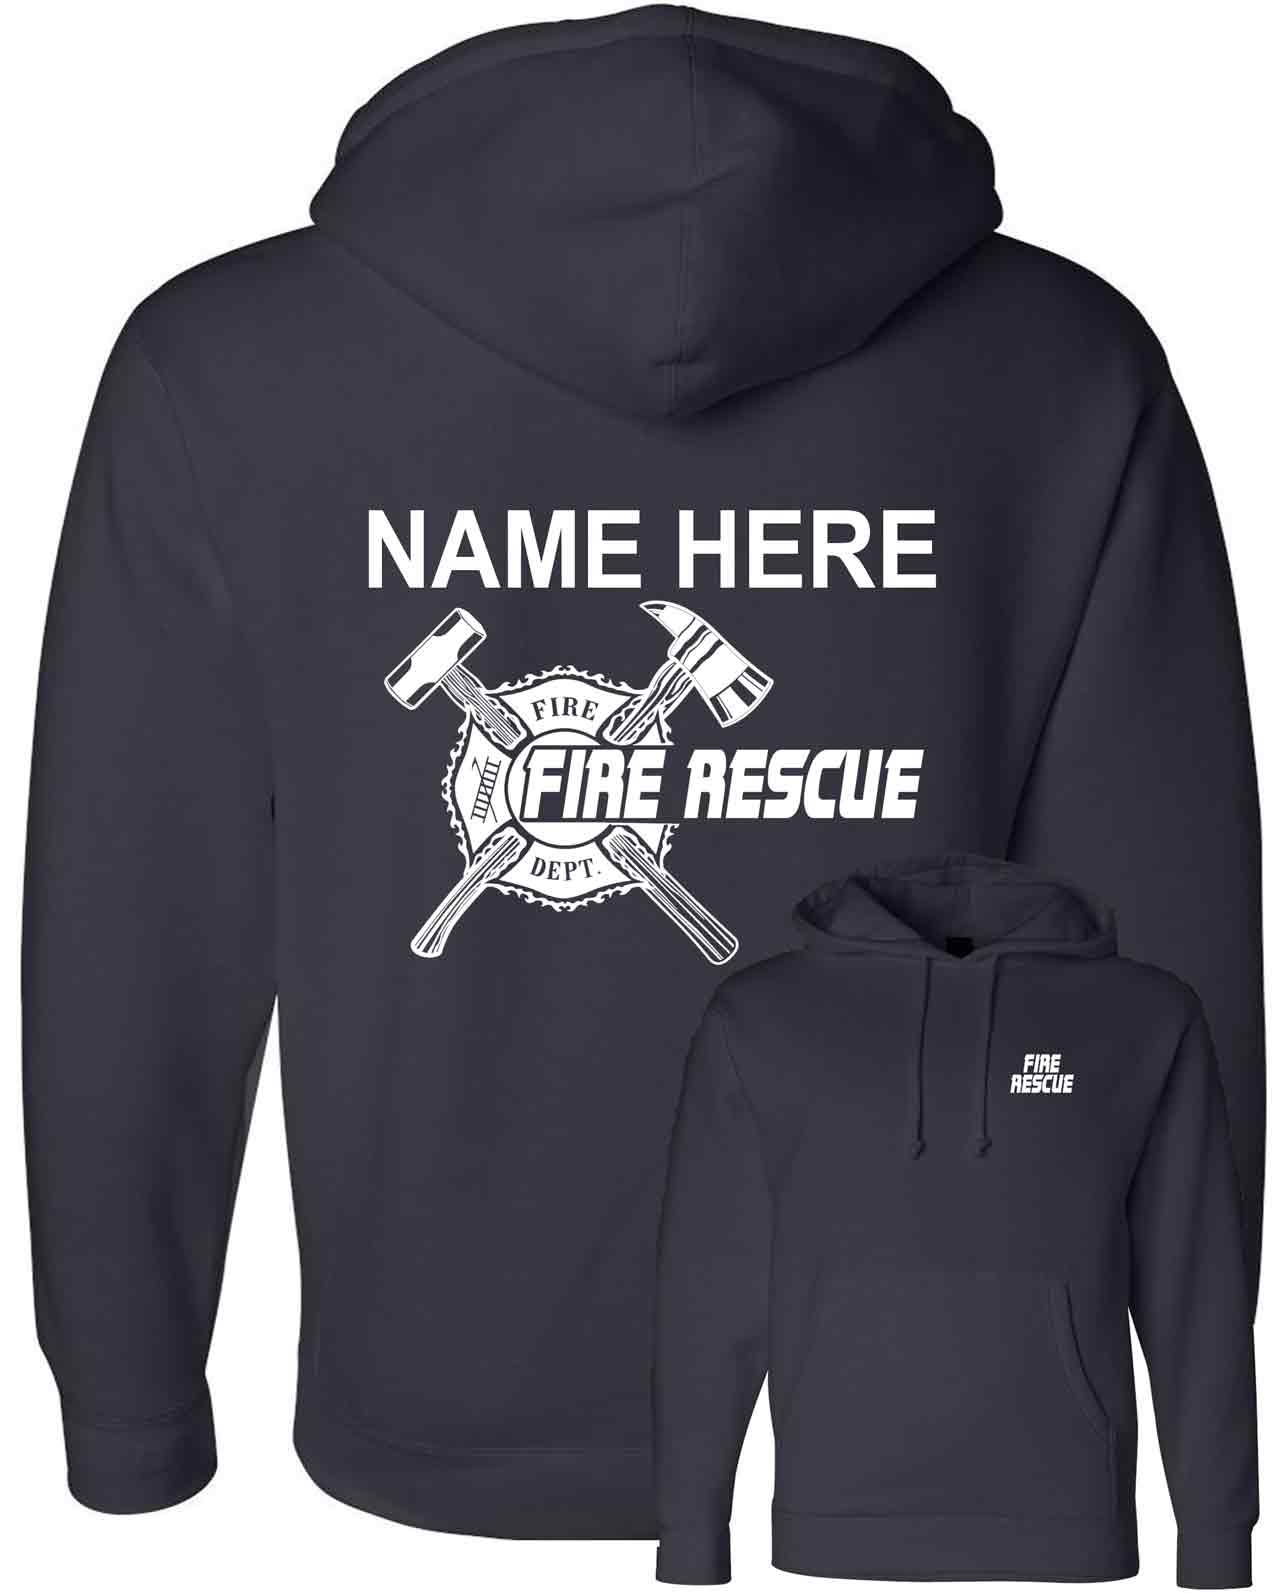 fire-rescue-maltese-cross-hoodies-navy.jpg